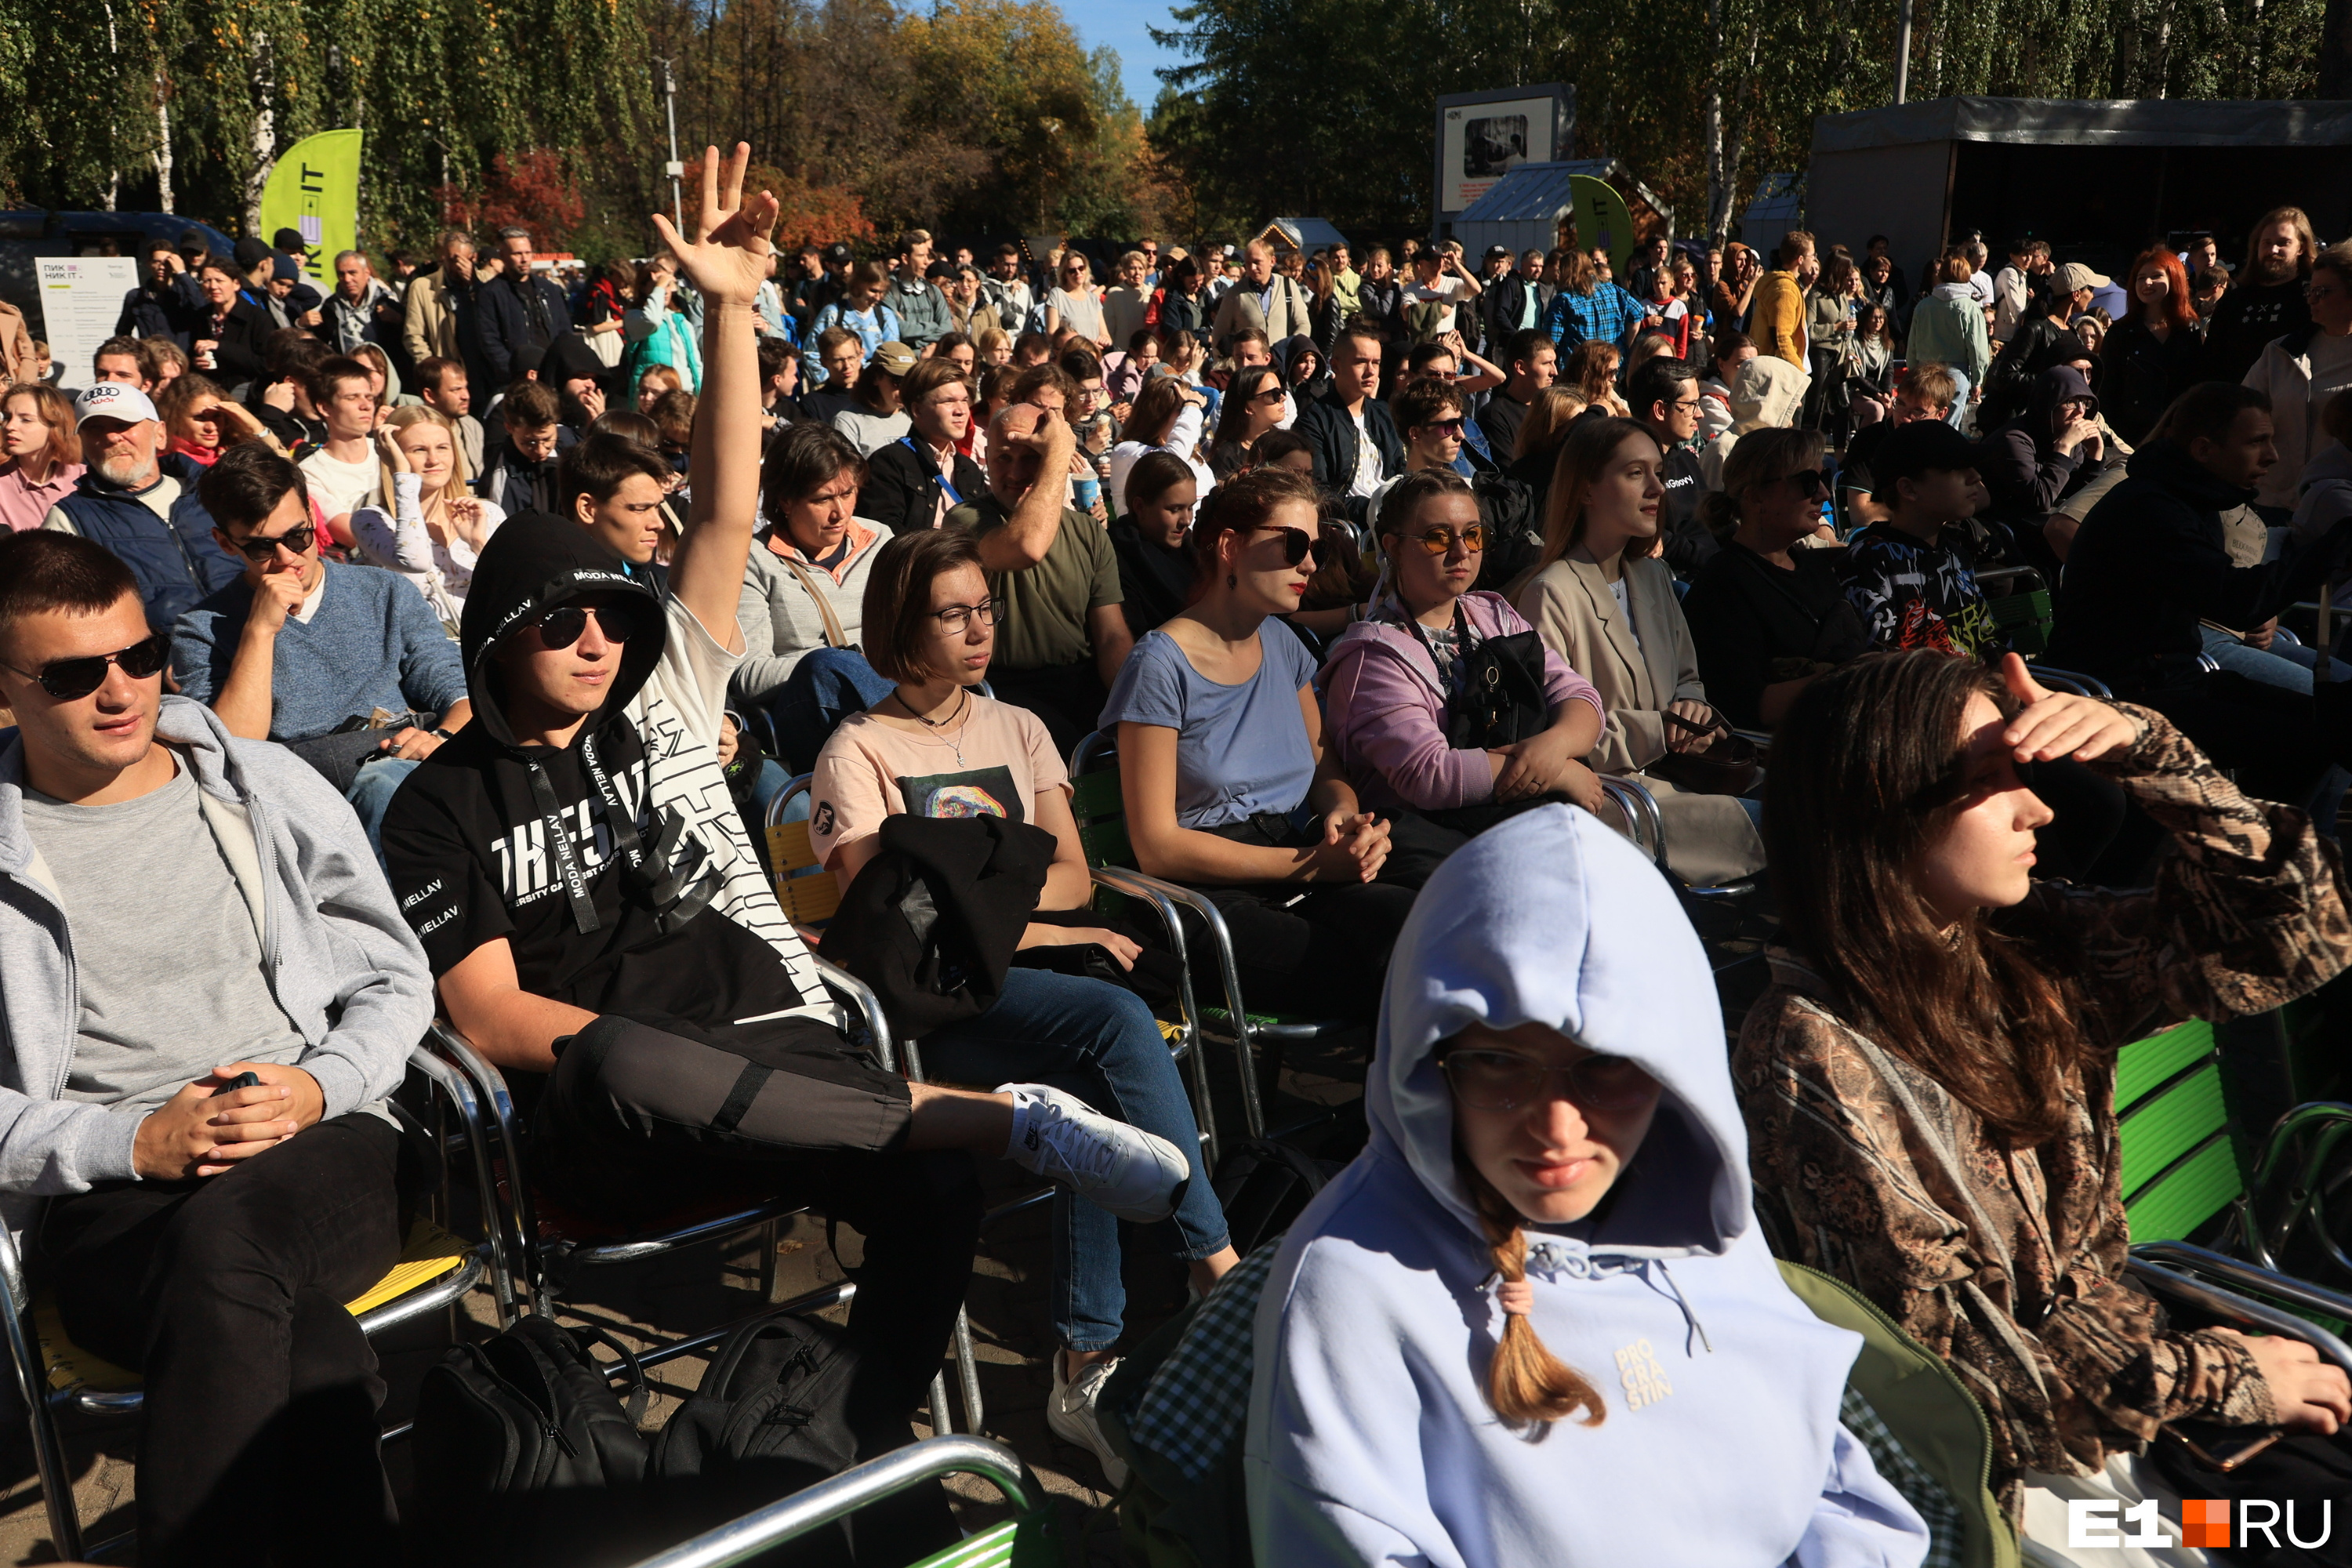 В Парке Маяковского собрались тысячи молодых людей. И дело было не в концертах